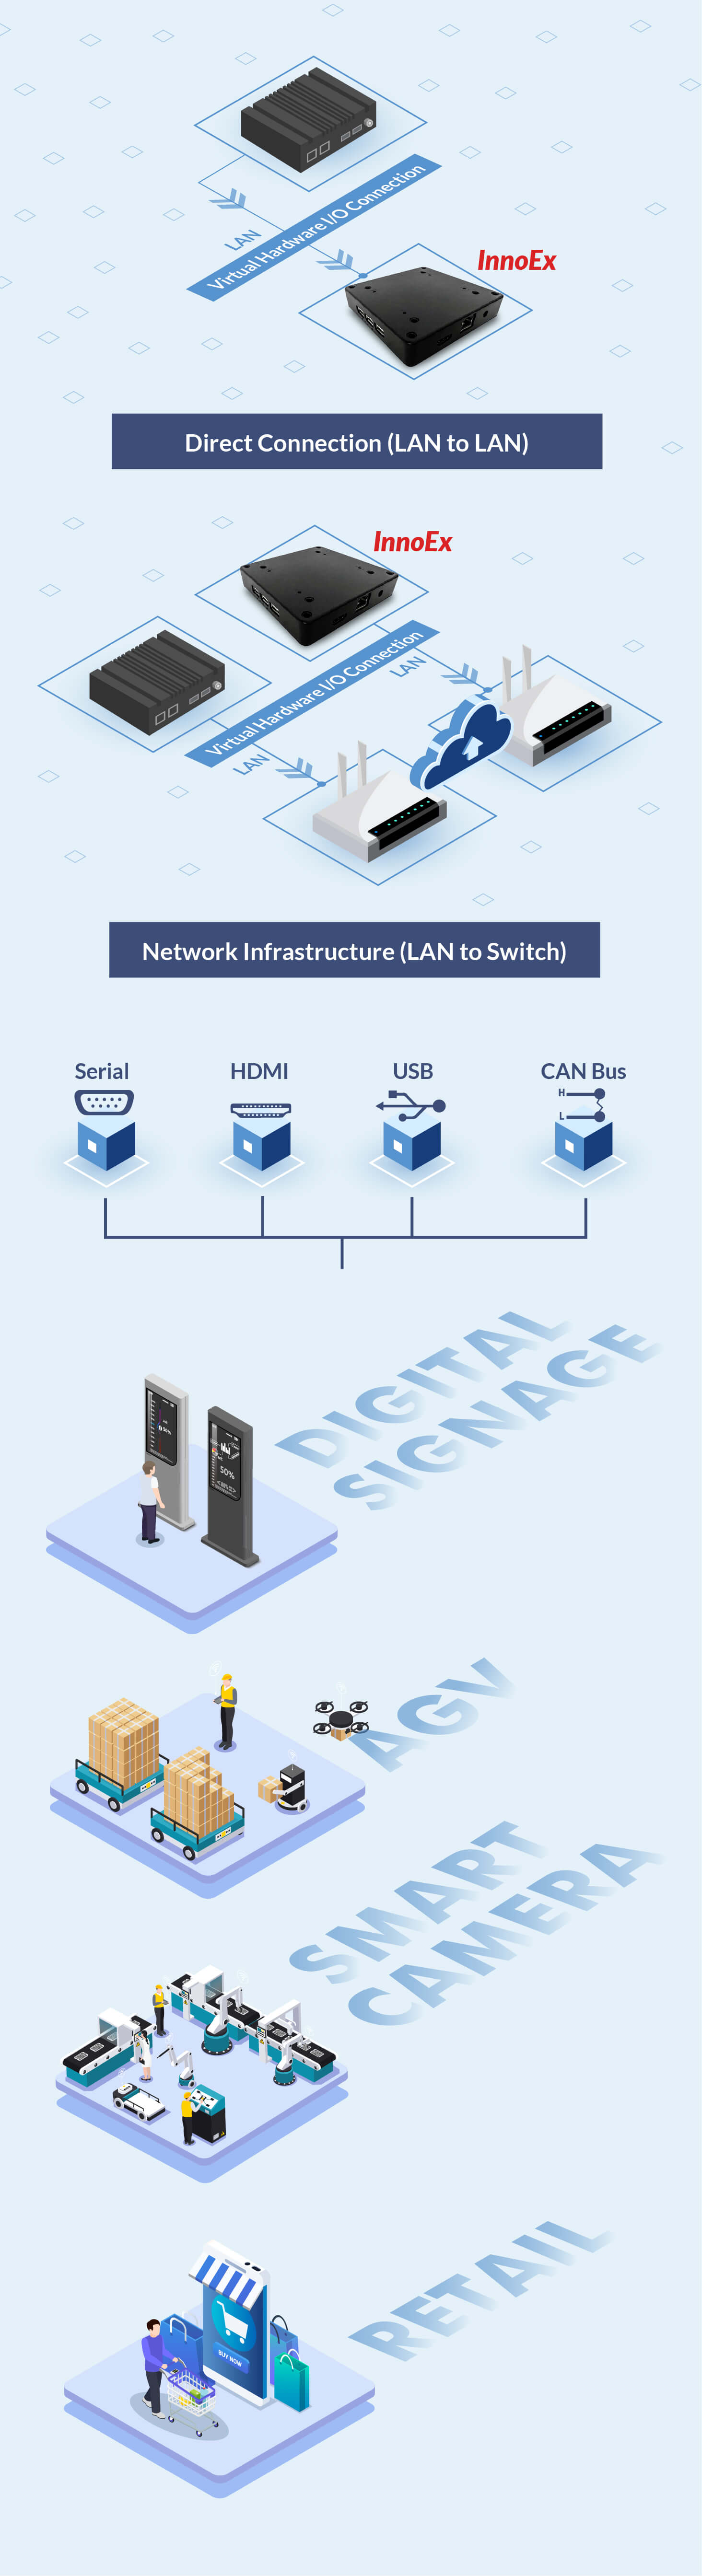 직접 연결(LAN에서 LAN으로) & 네트워크 인프라(LAN에서 스위치로)